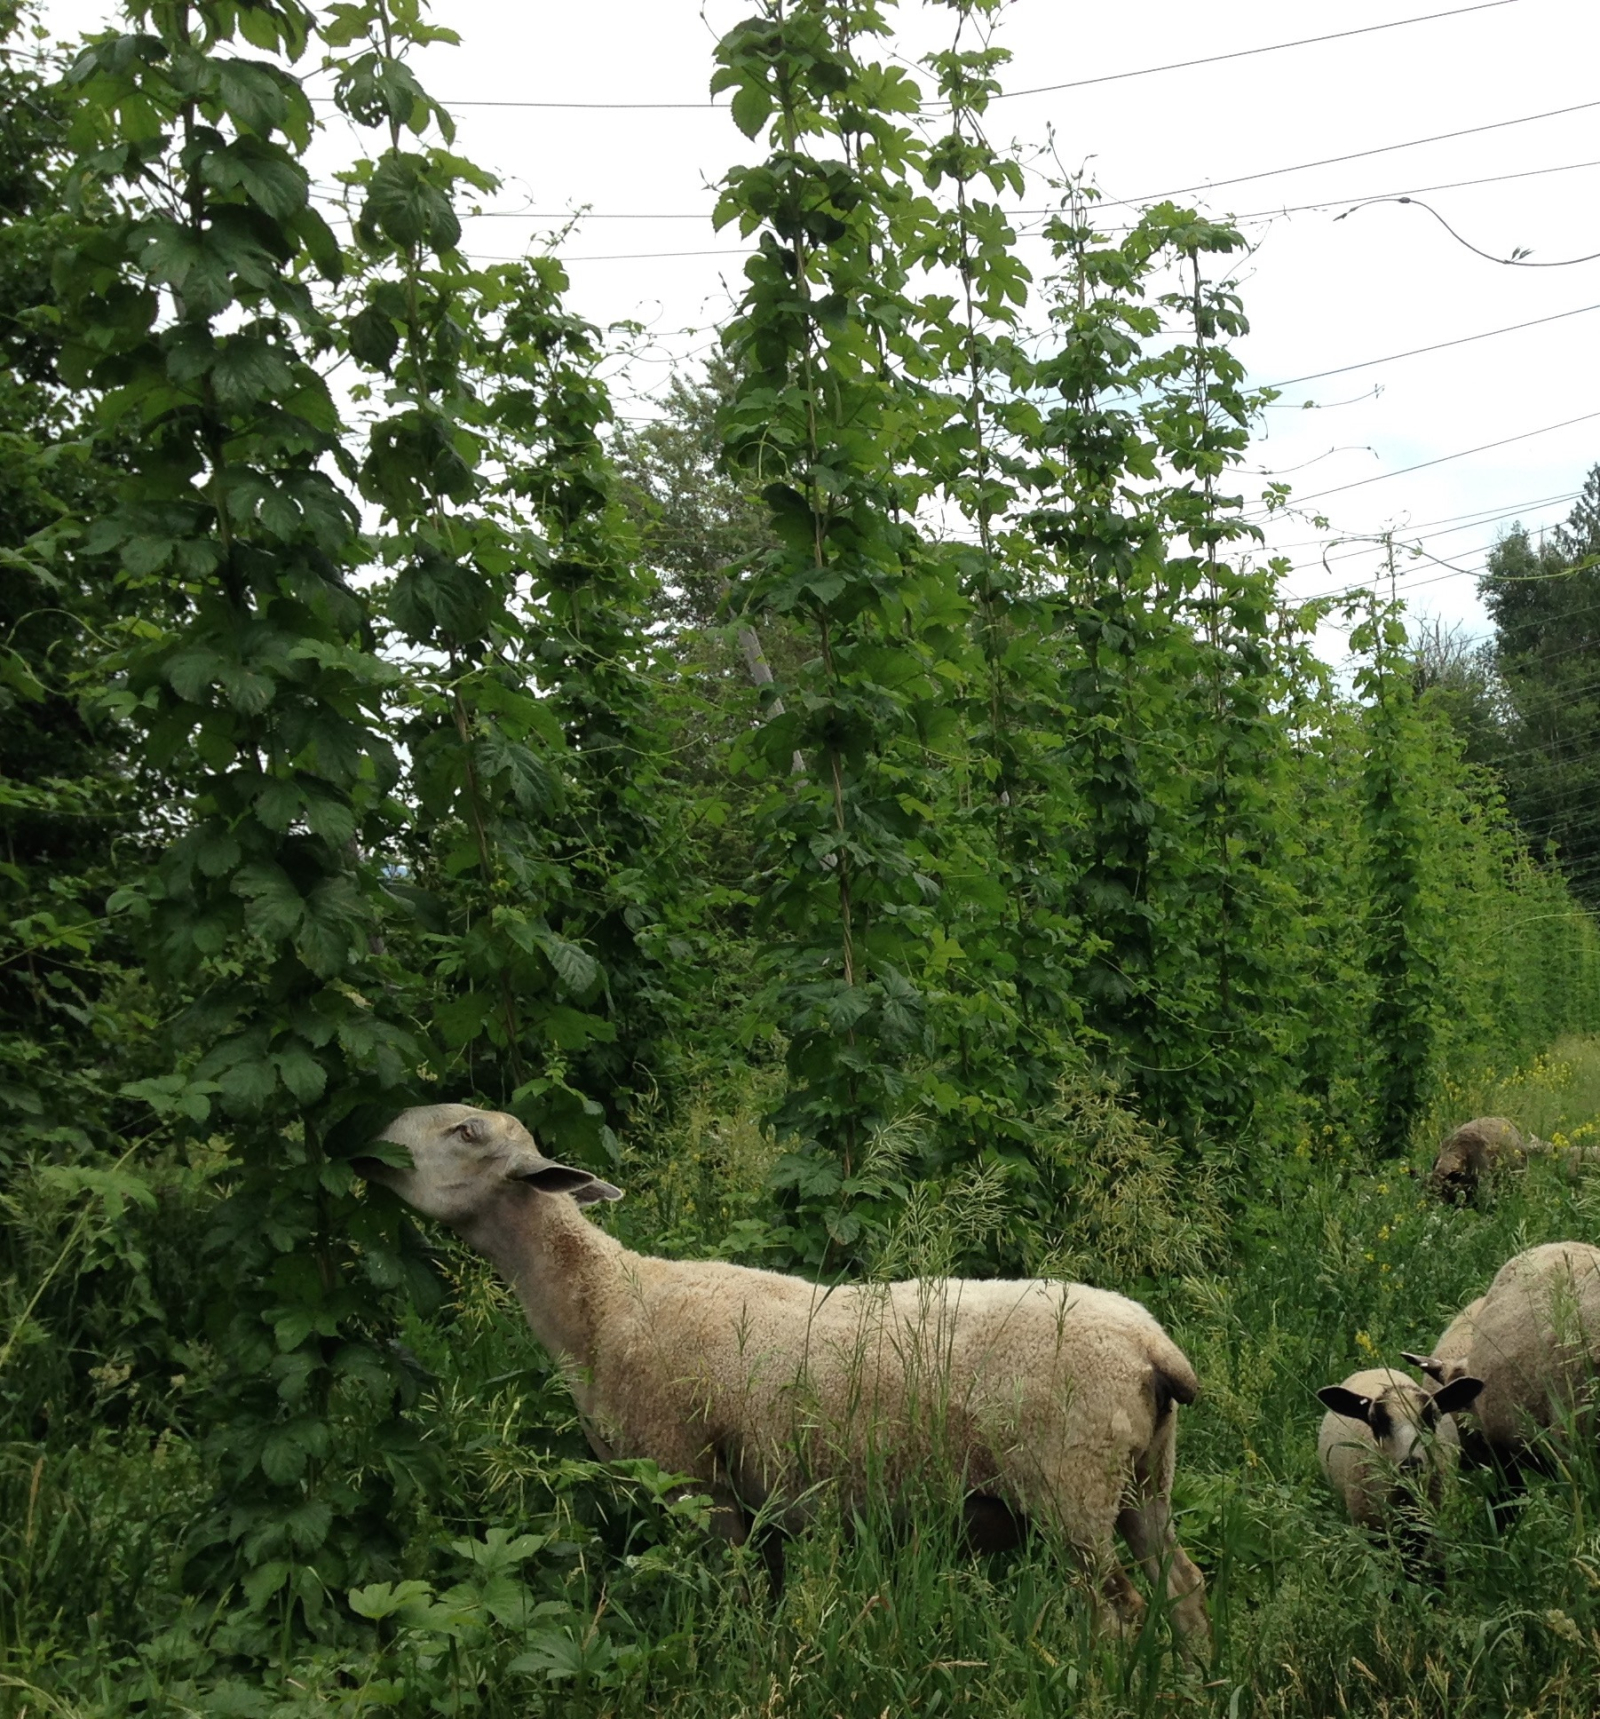 cranogg ales, beer, sheep, hops